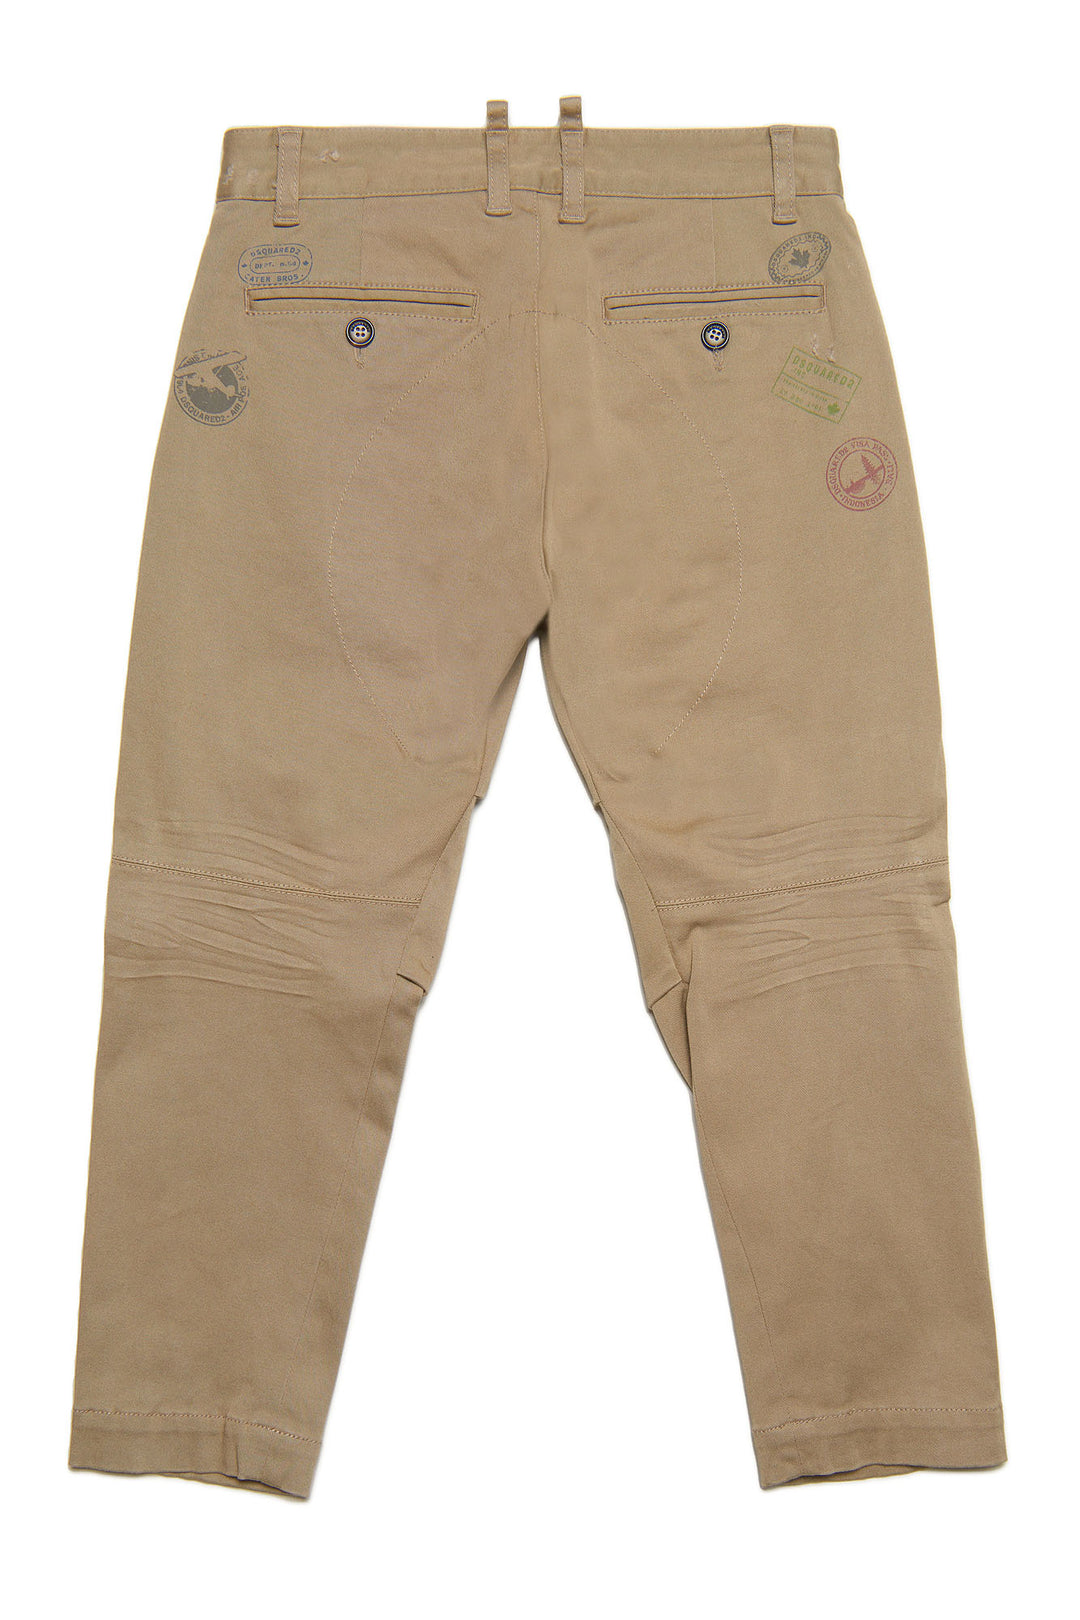 Pantalon enfant beige, avec imprimé devant et dos